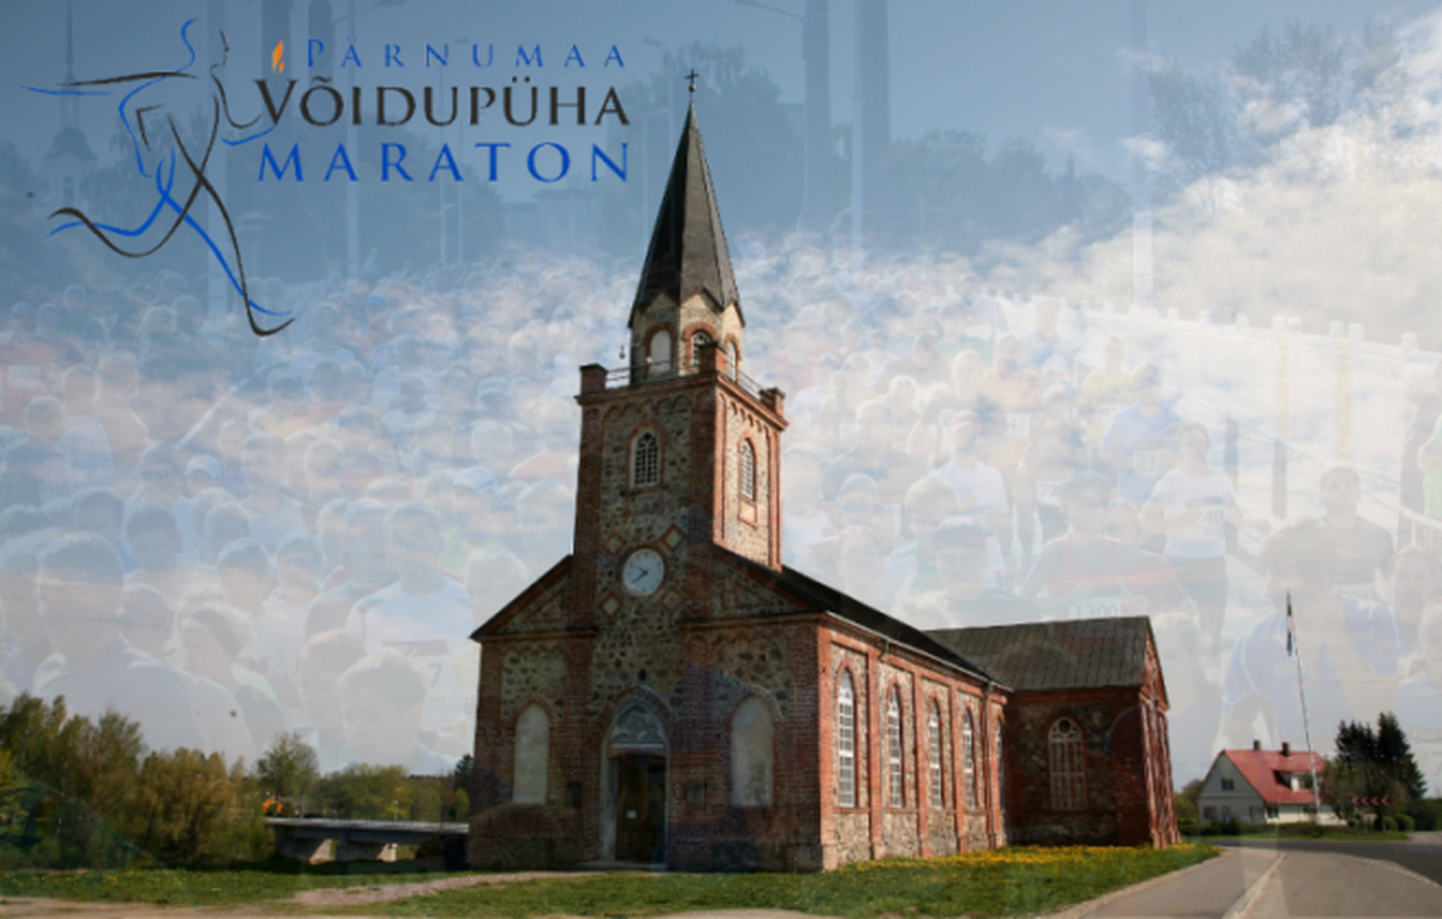 Pärnumaa Võidupüha maratonil jookstakse 22. juunil Torist Pärnusse.